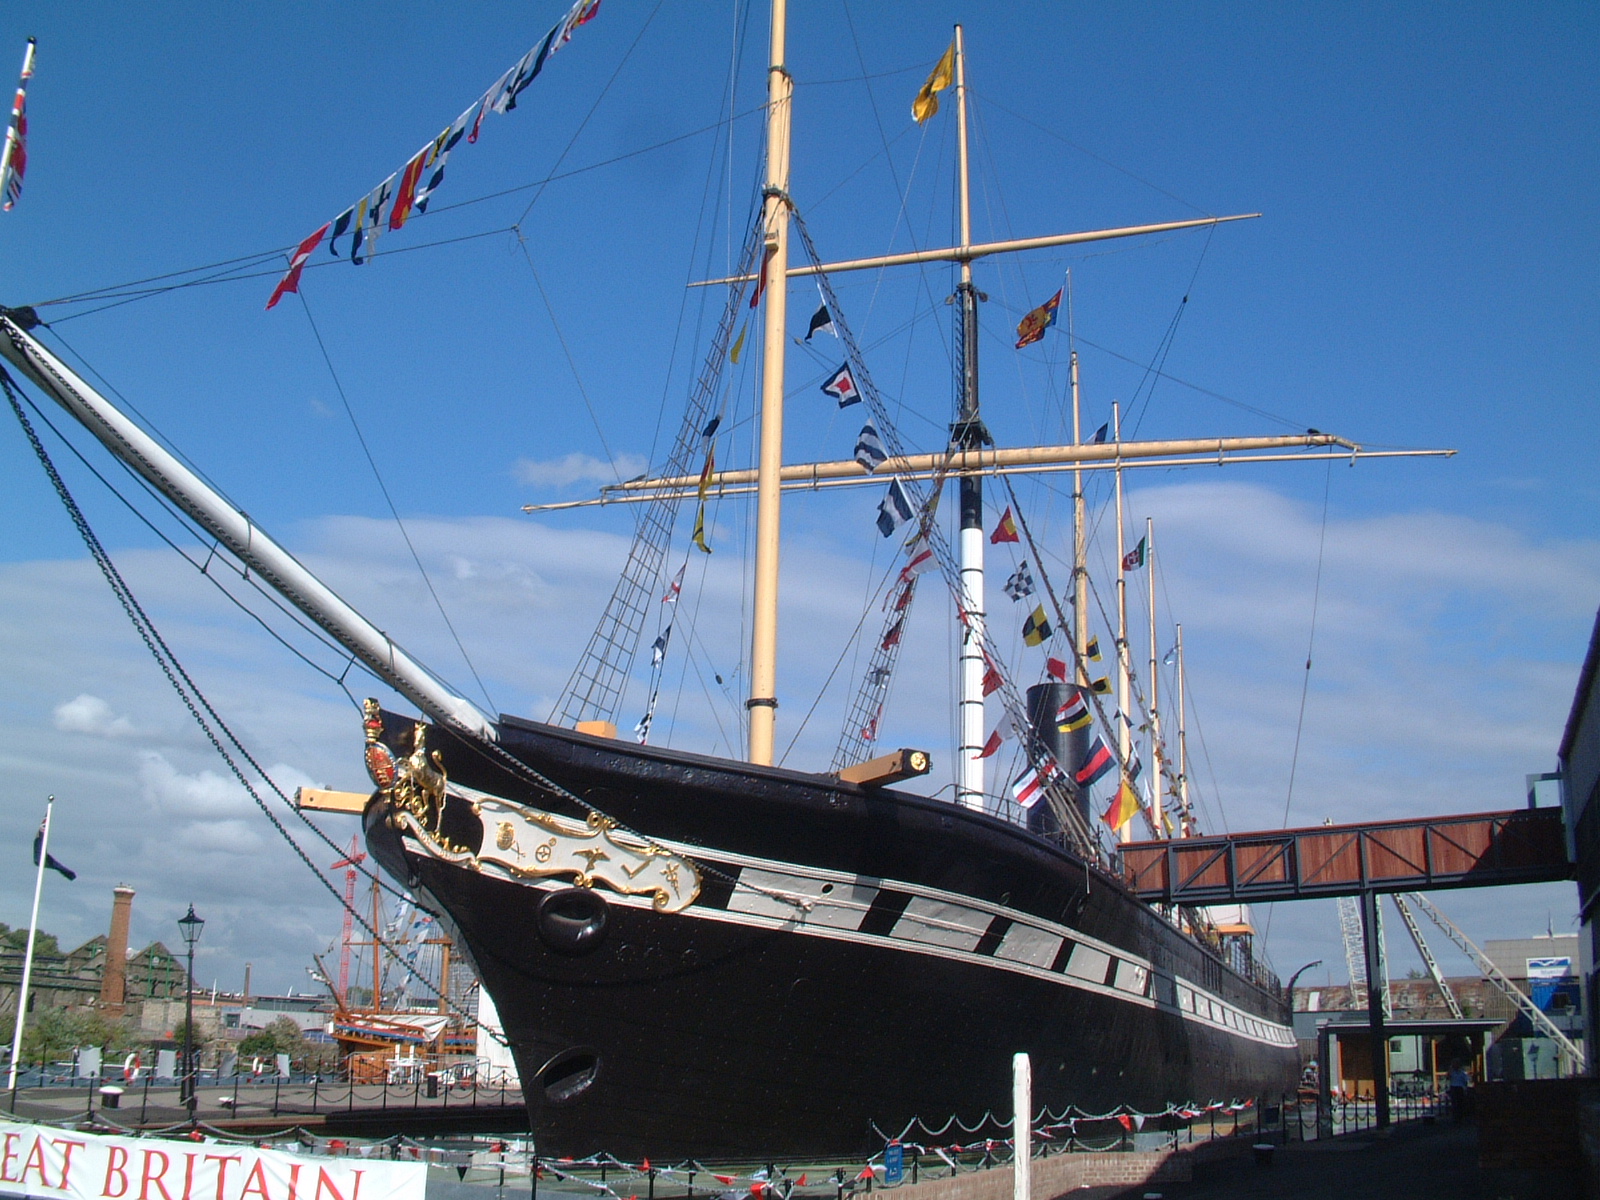 上图：停泊的布里斯托港的大不列颠号。布鲁内尔（Isambard Kingdom Brunel）（1806-1859年）是一位伟大的英国工程师，在2002年英国广播公司举办的「最伟大的100名英国人」评选中名列第二。他于1845年主持建成的第一艘横跨大西洋的蒸汽船大不列颠号（SS Great Britain），被誉为英国航海史上的一个奇迹，圆了无数欧洲人的移民梦，仅用14天就能从英国到达纽约，6周就能从英国到达澳洲。大不列颠号的长、宽、高（98×15.5×10米）比例与挪亚方舟（300x50x30肘）的比例几乎完全相同 。无数的造船专家经过多次失败，才知道按照方舟的比例造船最能抵御风浪。方舟并不是为高速行驶而设计的，神所指示的尺寸是保证稳定、防止颠簸和滚动的最佳比例。